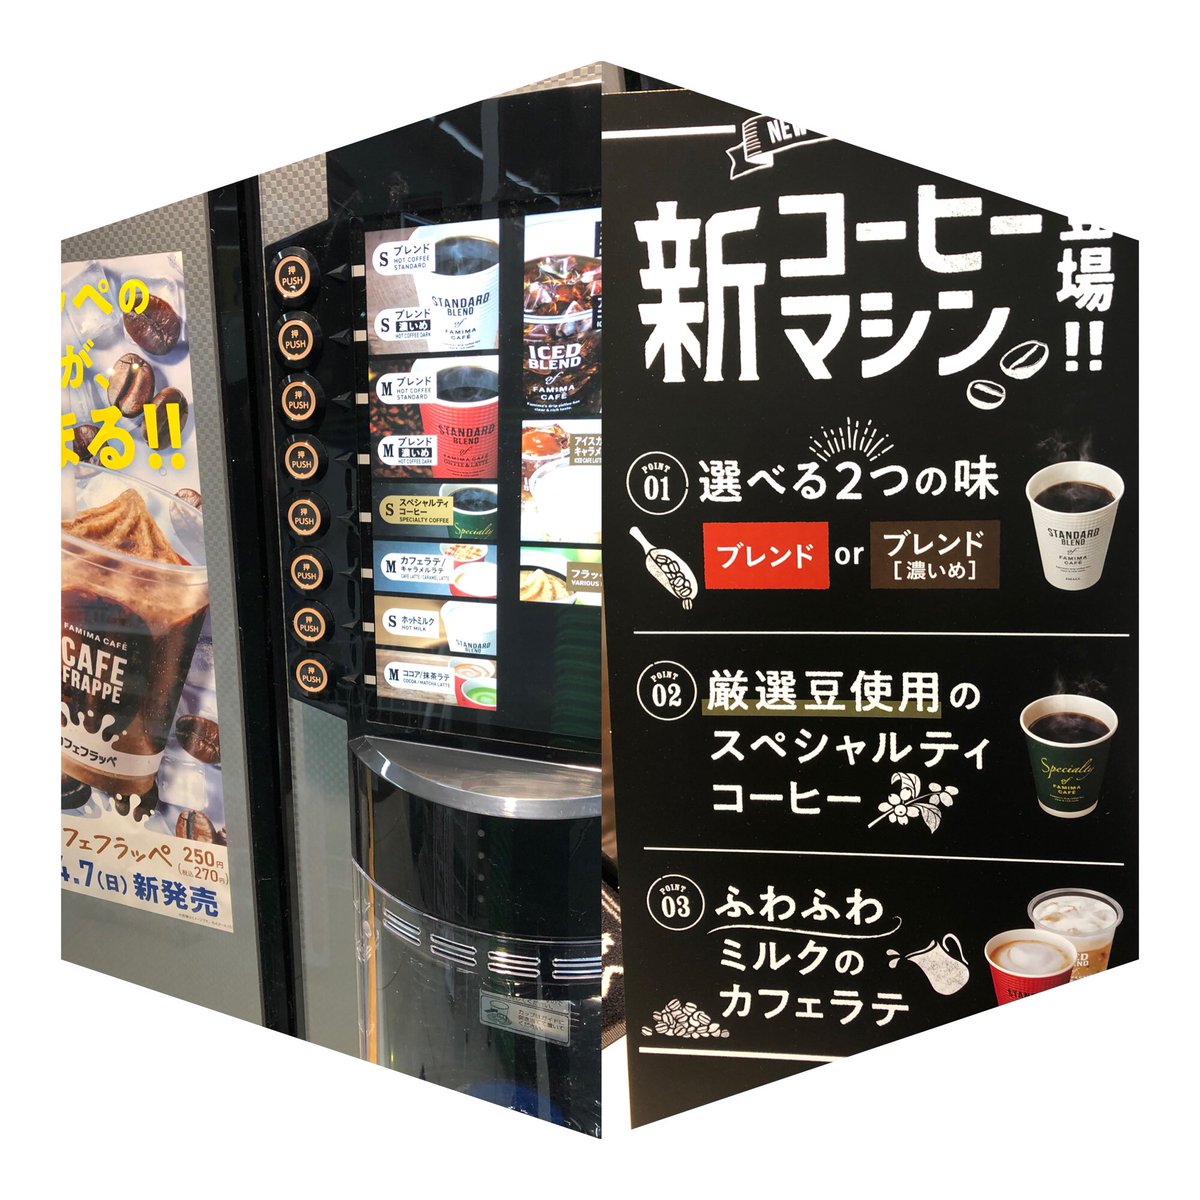 ট ইট র ファミリーマート滝川日本最北端 新型コーヒーマシン導入しましたー ファミマ滝川 ファミマ滝川スタッフ募集中 ファミマコーヒー T Co Vngjvcfk1y